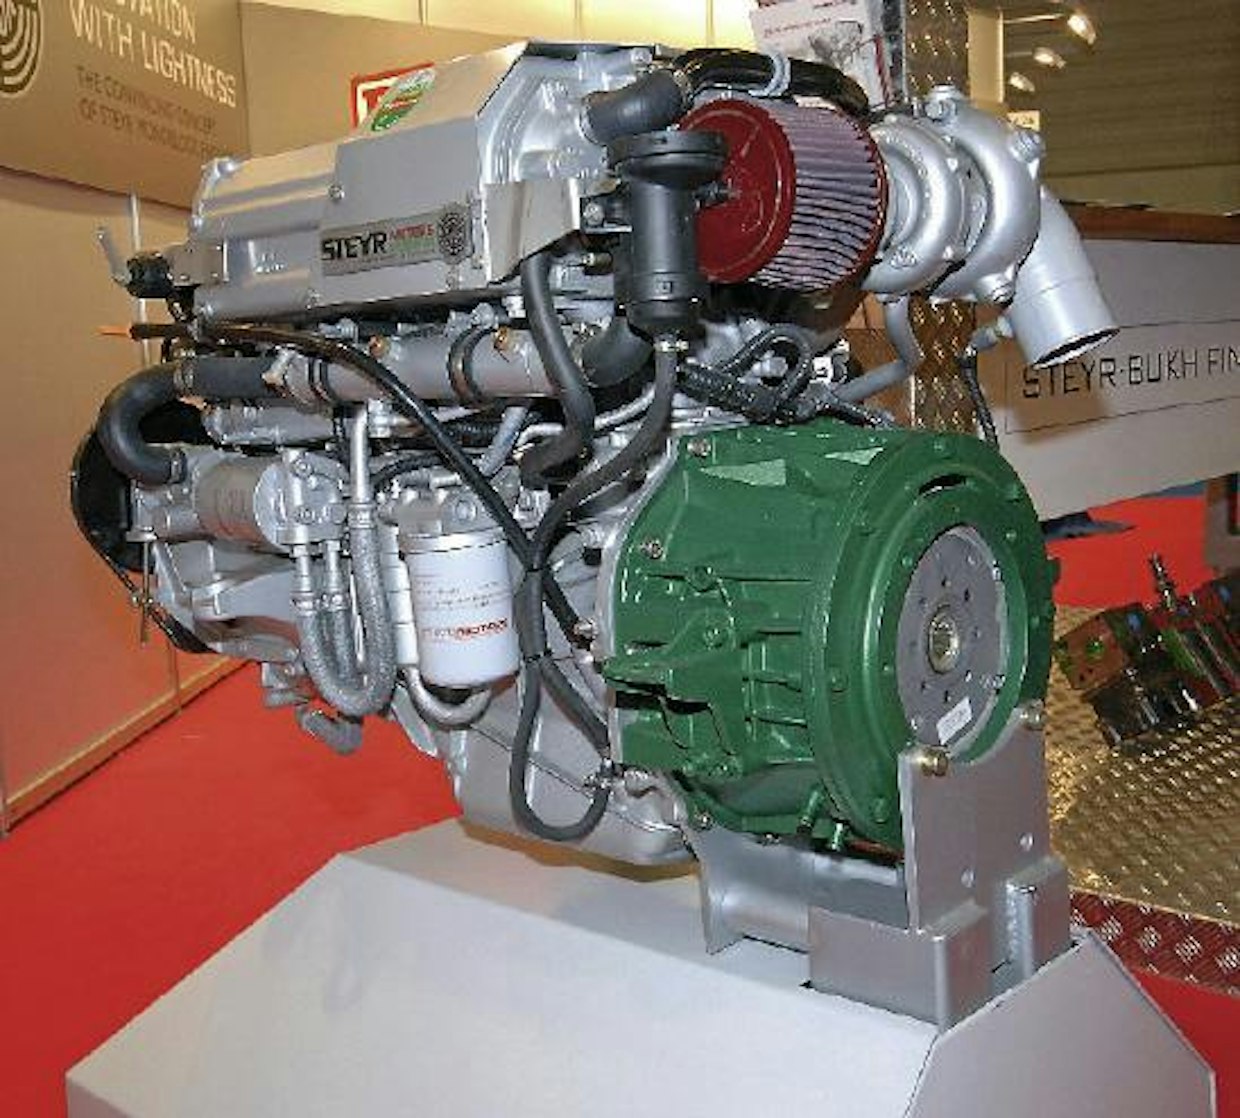 Steyr esitteli uuden hybridilaitteiston dieselmoottoriin. Kyseessä ei ole varsinaisesti hybridimoottorista vaan lisälaitteesta, koska se voidaan kytkeä myös vanhaan Steyr-moottoriin. Vauhtipyörään kytkettävä hybridiyksikkö pitää sisällään generaattorin ja vedonvapauttimen, joten dieselmoottorin veto voidaan irrottaa ja ajaa pelkästään sähkömoottorilla. Sähkömoottori/generaattoria voidaan käyttää neljällä eri tavalla:  1. Starttimoottorina, jolla dieselmoottori käynnistetään  2. Generaattorina, jolla tuotetaan maksimissaan 5 kW:n teho ulkopuoliseen käyttöön veneen sähköisiin toimintoihin  3. Sähkömoottorina, joka käyttää potkuriakselia  4. Kiihdytyksessä dieselin apuna antamaan lisää vääntöä. Järjestelmään kuuluu kolme erillistä säätöyksikköä (SEC), jolla ohjataan moottorin ECU- ja hybridin HCU ‑yksikköjä CAN-väylän avulla. Järjestelmä toimii joko 14 tai 28 V jännitteellä. Hybridiyksikkö on pienikokoinen, valmistajan mukaan se jatkaa moottorin kokonaispituutta vain 30 mm. Sähkömoottorin käyttöaika riippuu käytettävissä olevasta akkumäärästä. Generaattori lataa akut aina tarvittaessa silloin kun ajetaan dieselin voimalla. Ajon aikana ei tarvita erillistä generaattoria veneen sähköisiin toimintoihin. Hintaa hybriyksiköllä 12.500 e. Jälkiasennushinta vanhaan koneeseen on 1000 e, johon on lisättävä vielä ajotietokoneen hinta 2000 e.